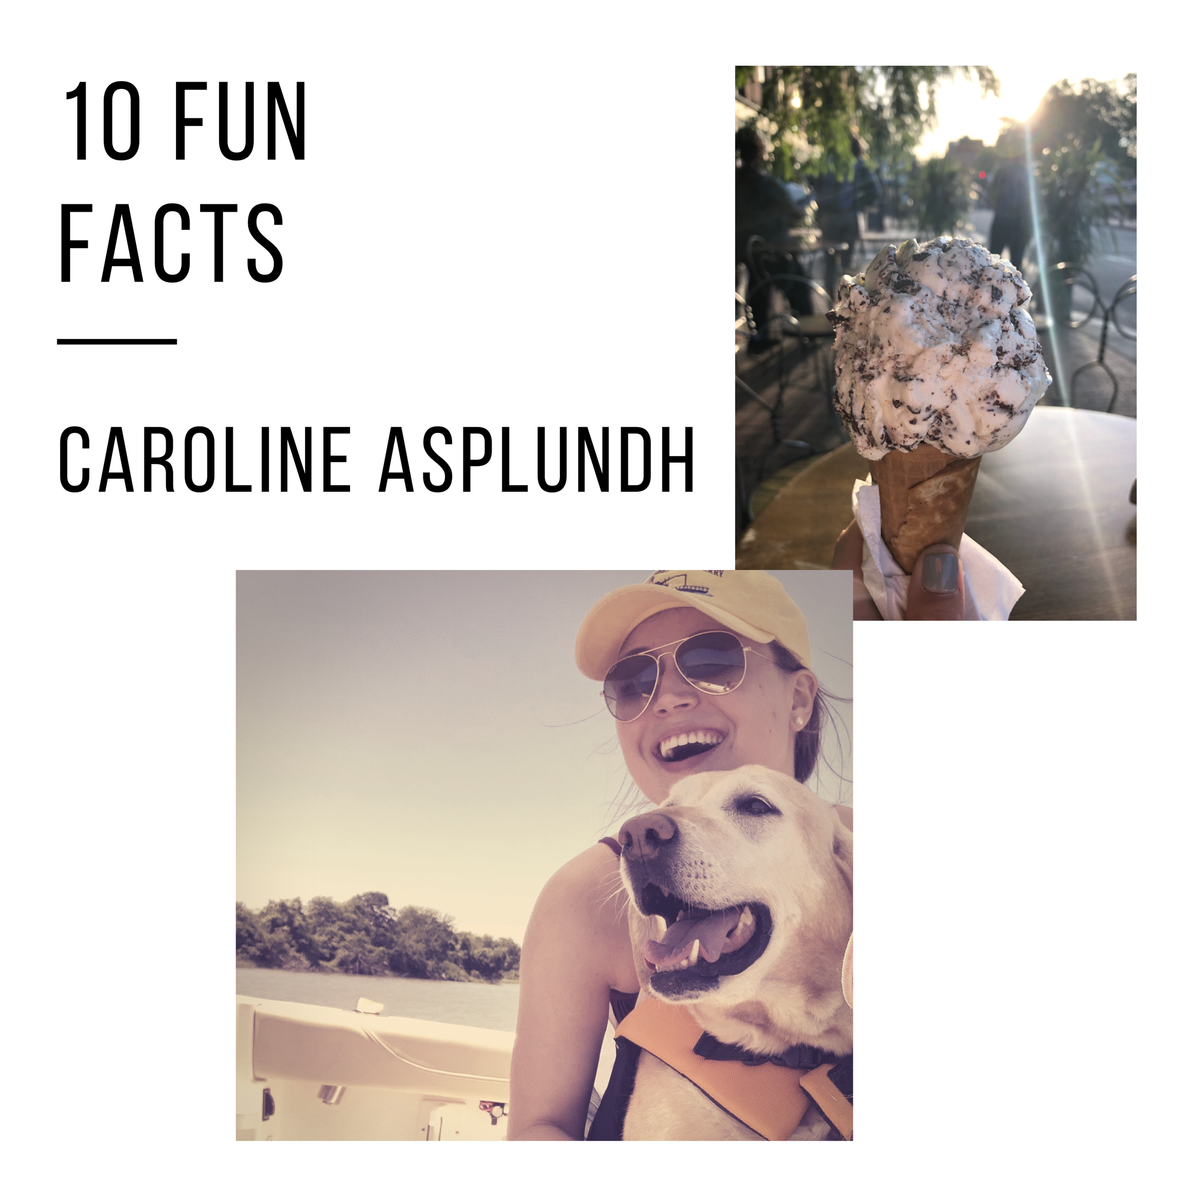 10 Fun Facts: Caroline Asplundh